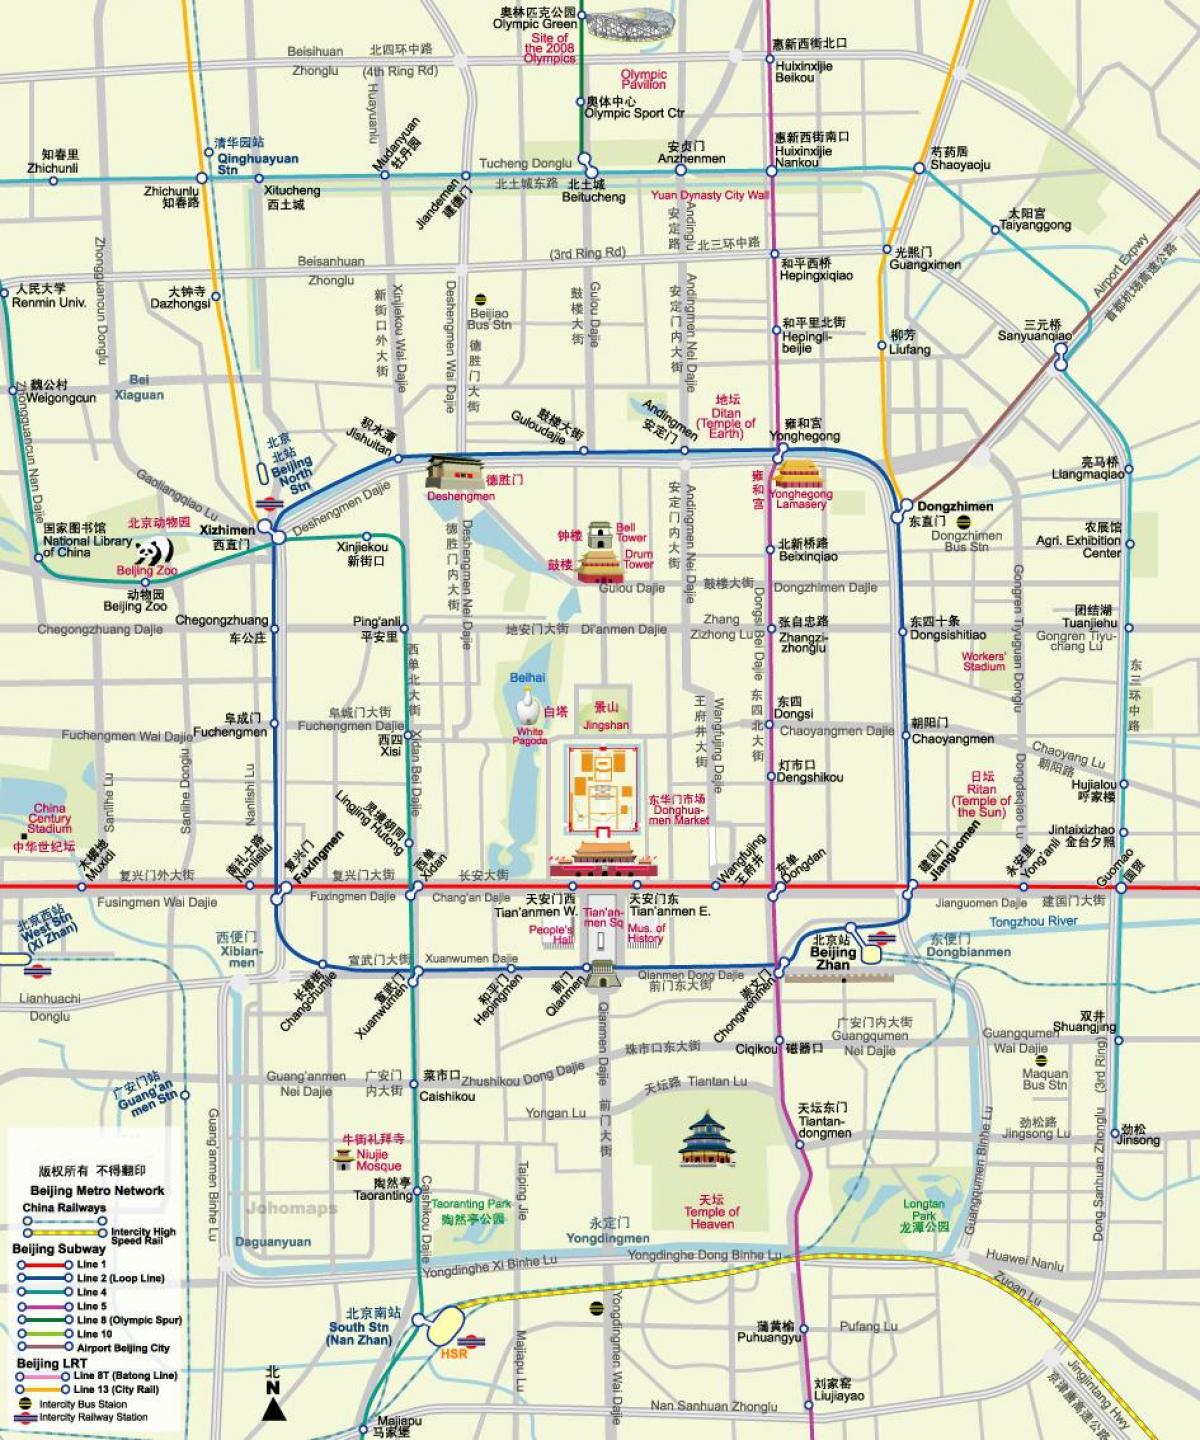 kart over Beijing t-kartet med turist-attraksjoner